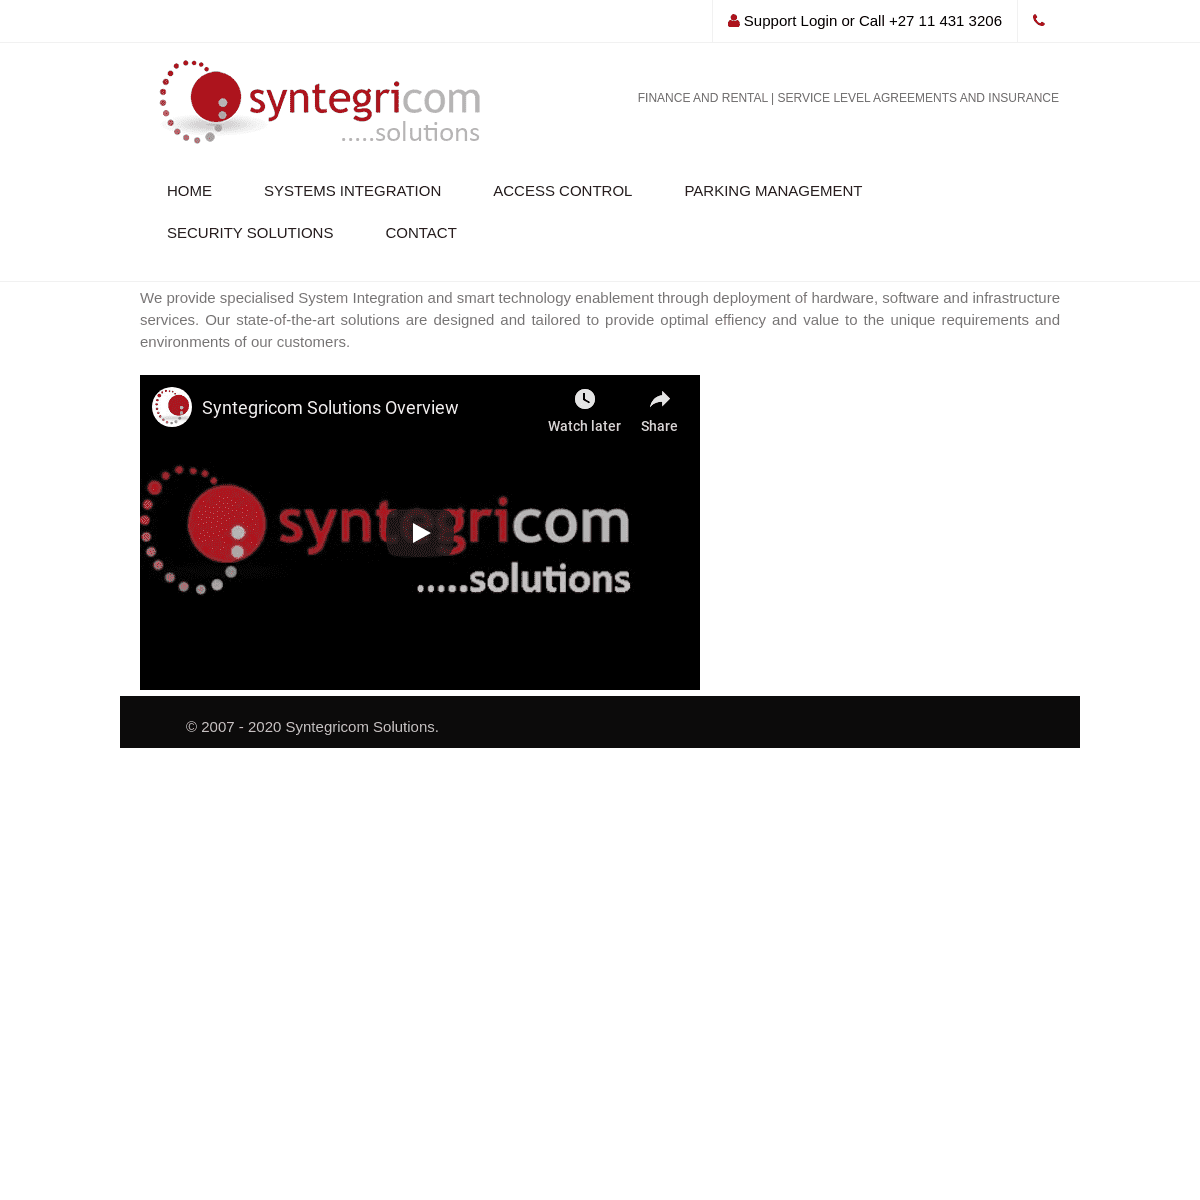 A complete backup of syntegricom.com